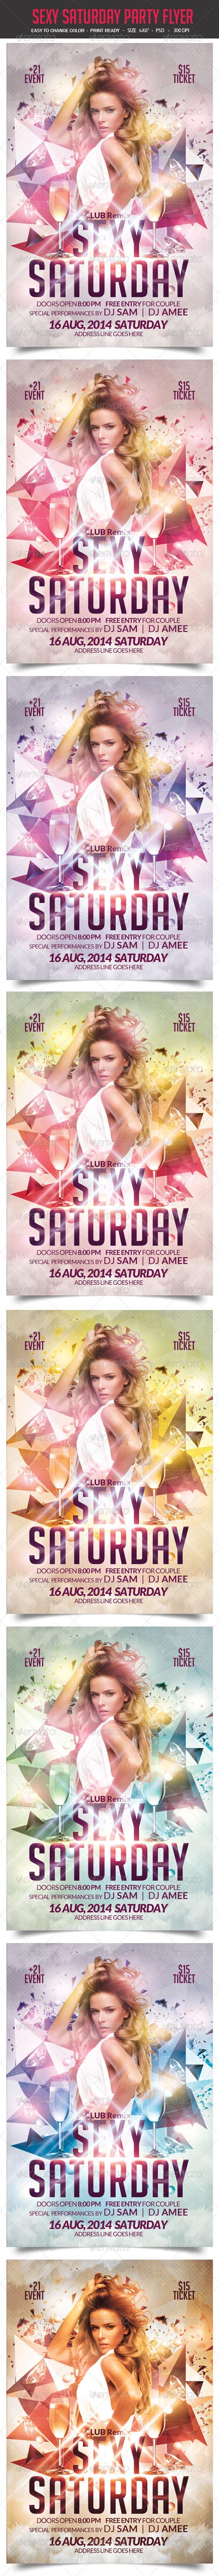 Sexy Saturday Party Flyer 8548546